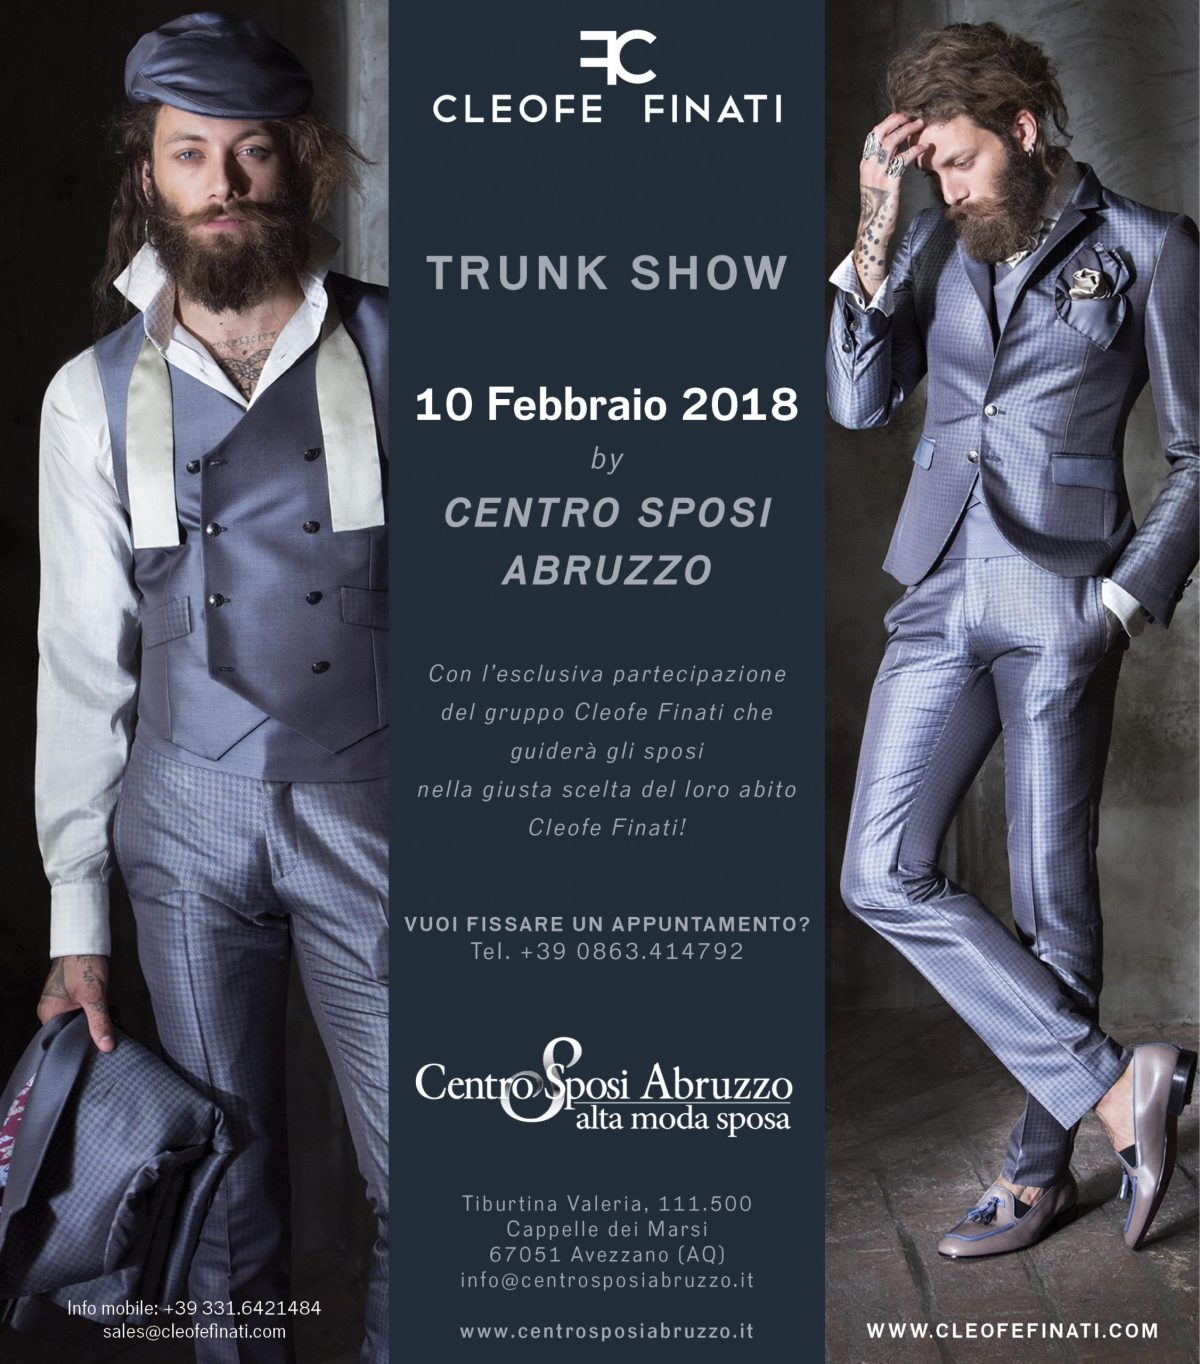 Trunk Show Cleofe Finati presso Centro Sposi Abruzzo